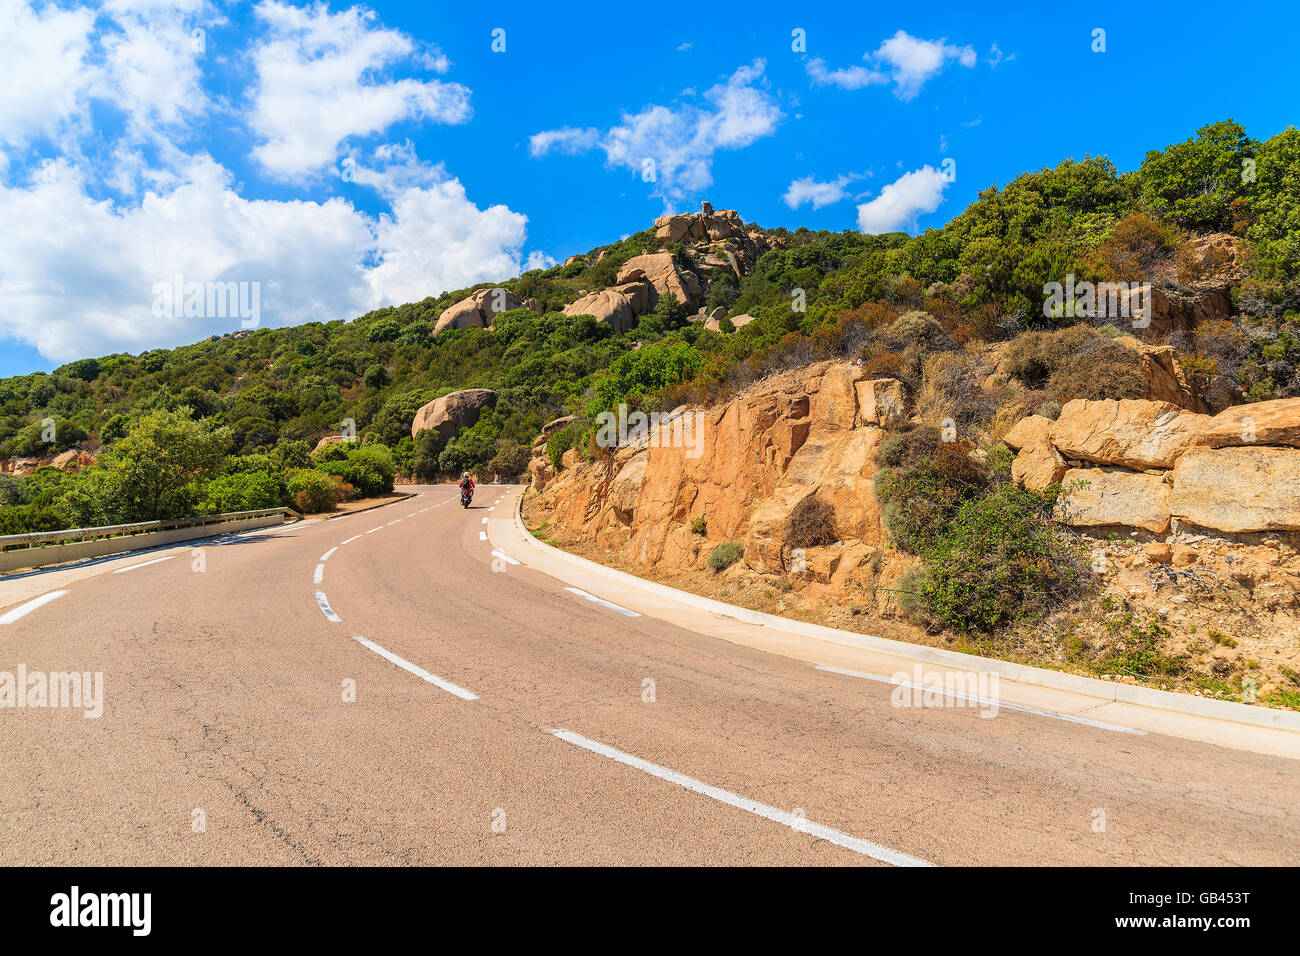 Scenic Route de montagne au milieu des rochers sur l'île de Corse, France Banque D'Images